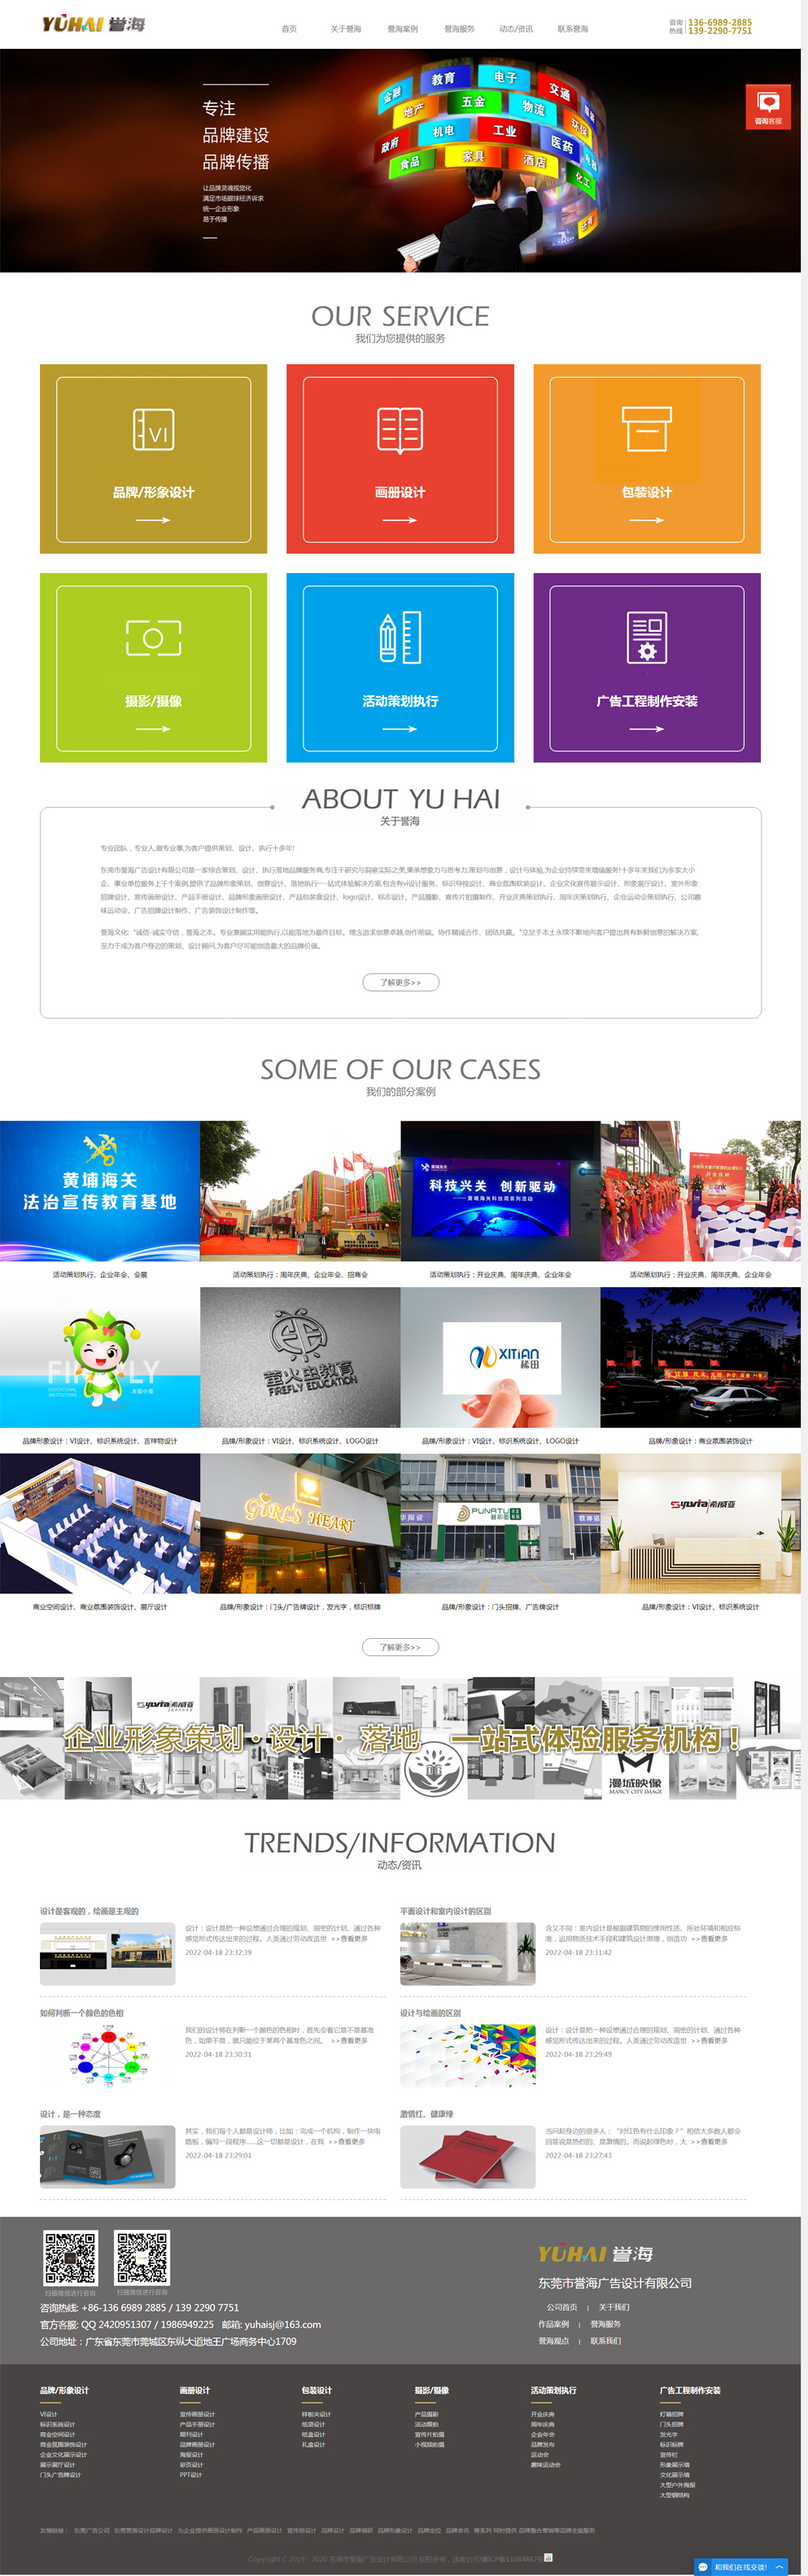 誉海设计企业官网设计完整首页